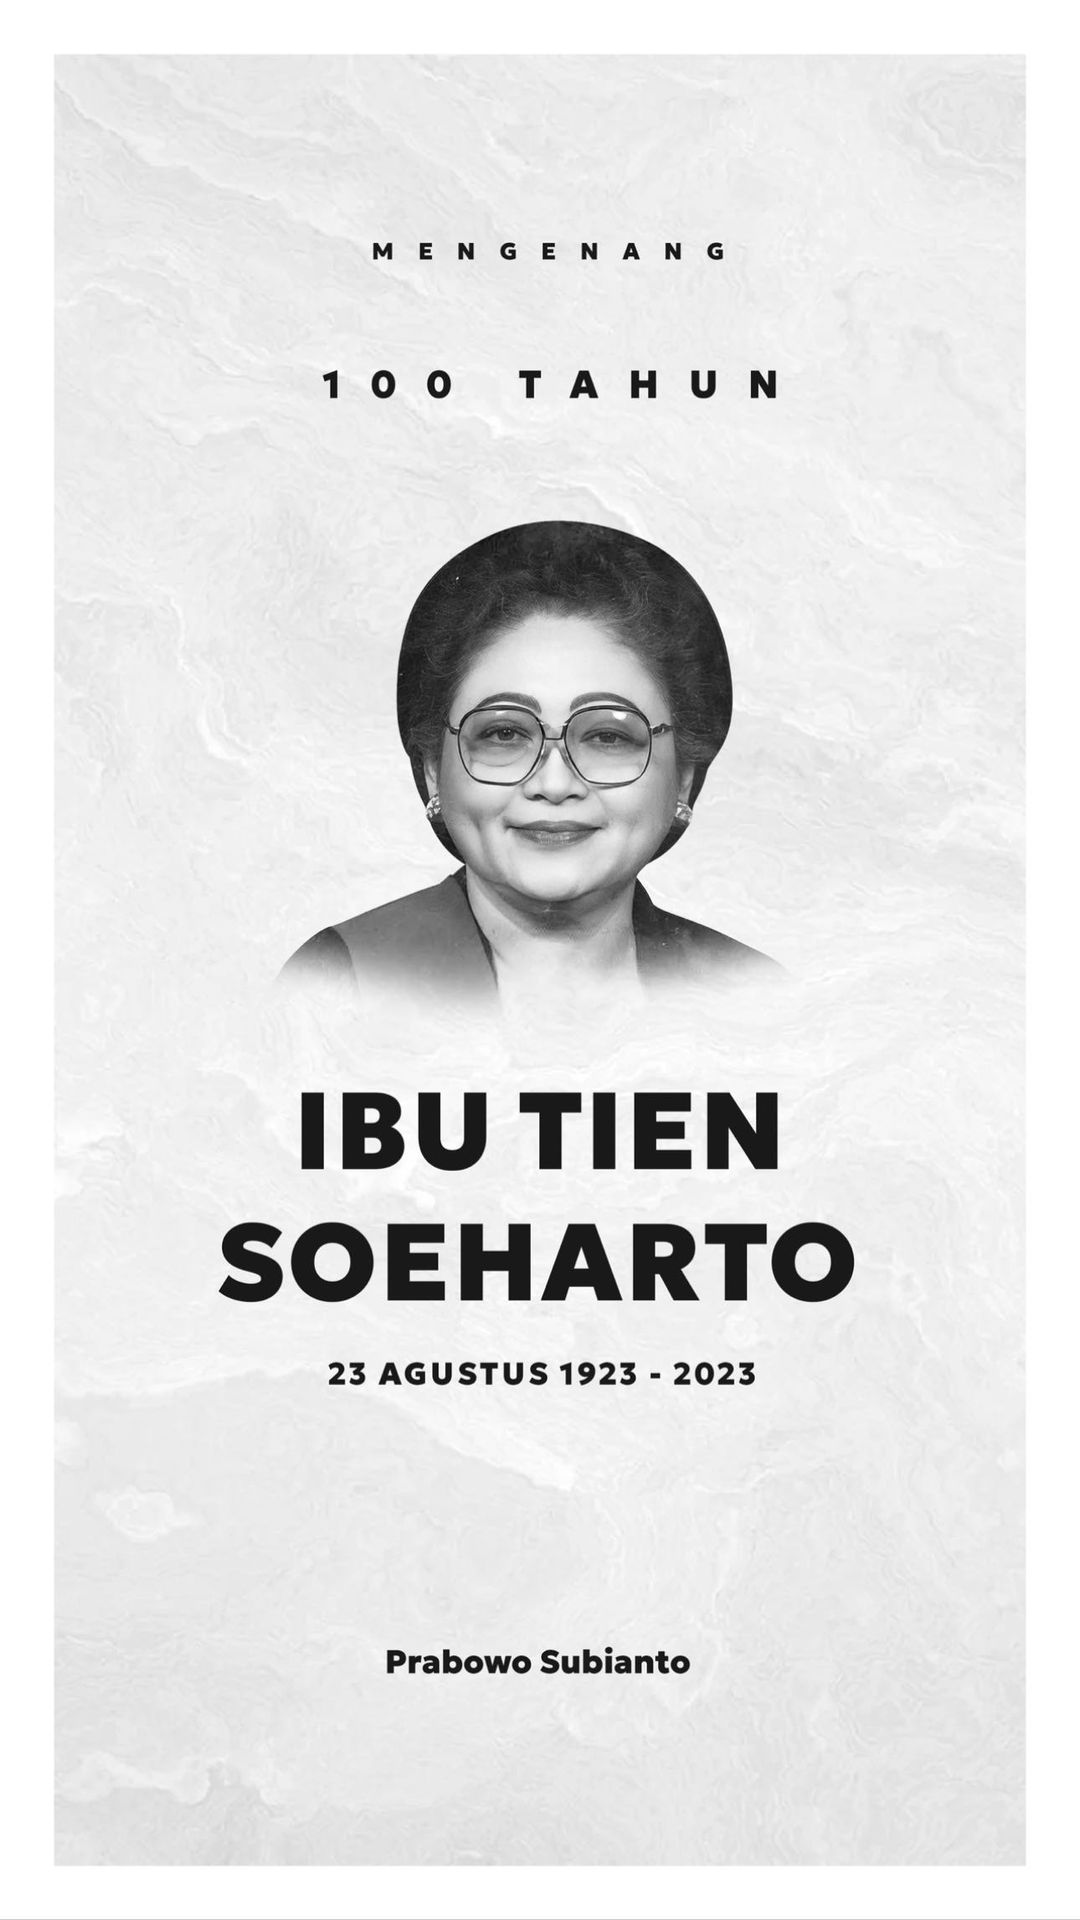 Ketika Prabowo Subianto Mengenang Bu Tien Soeharto, Mantan Mertuanya